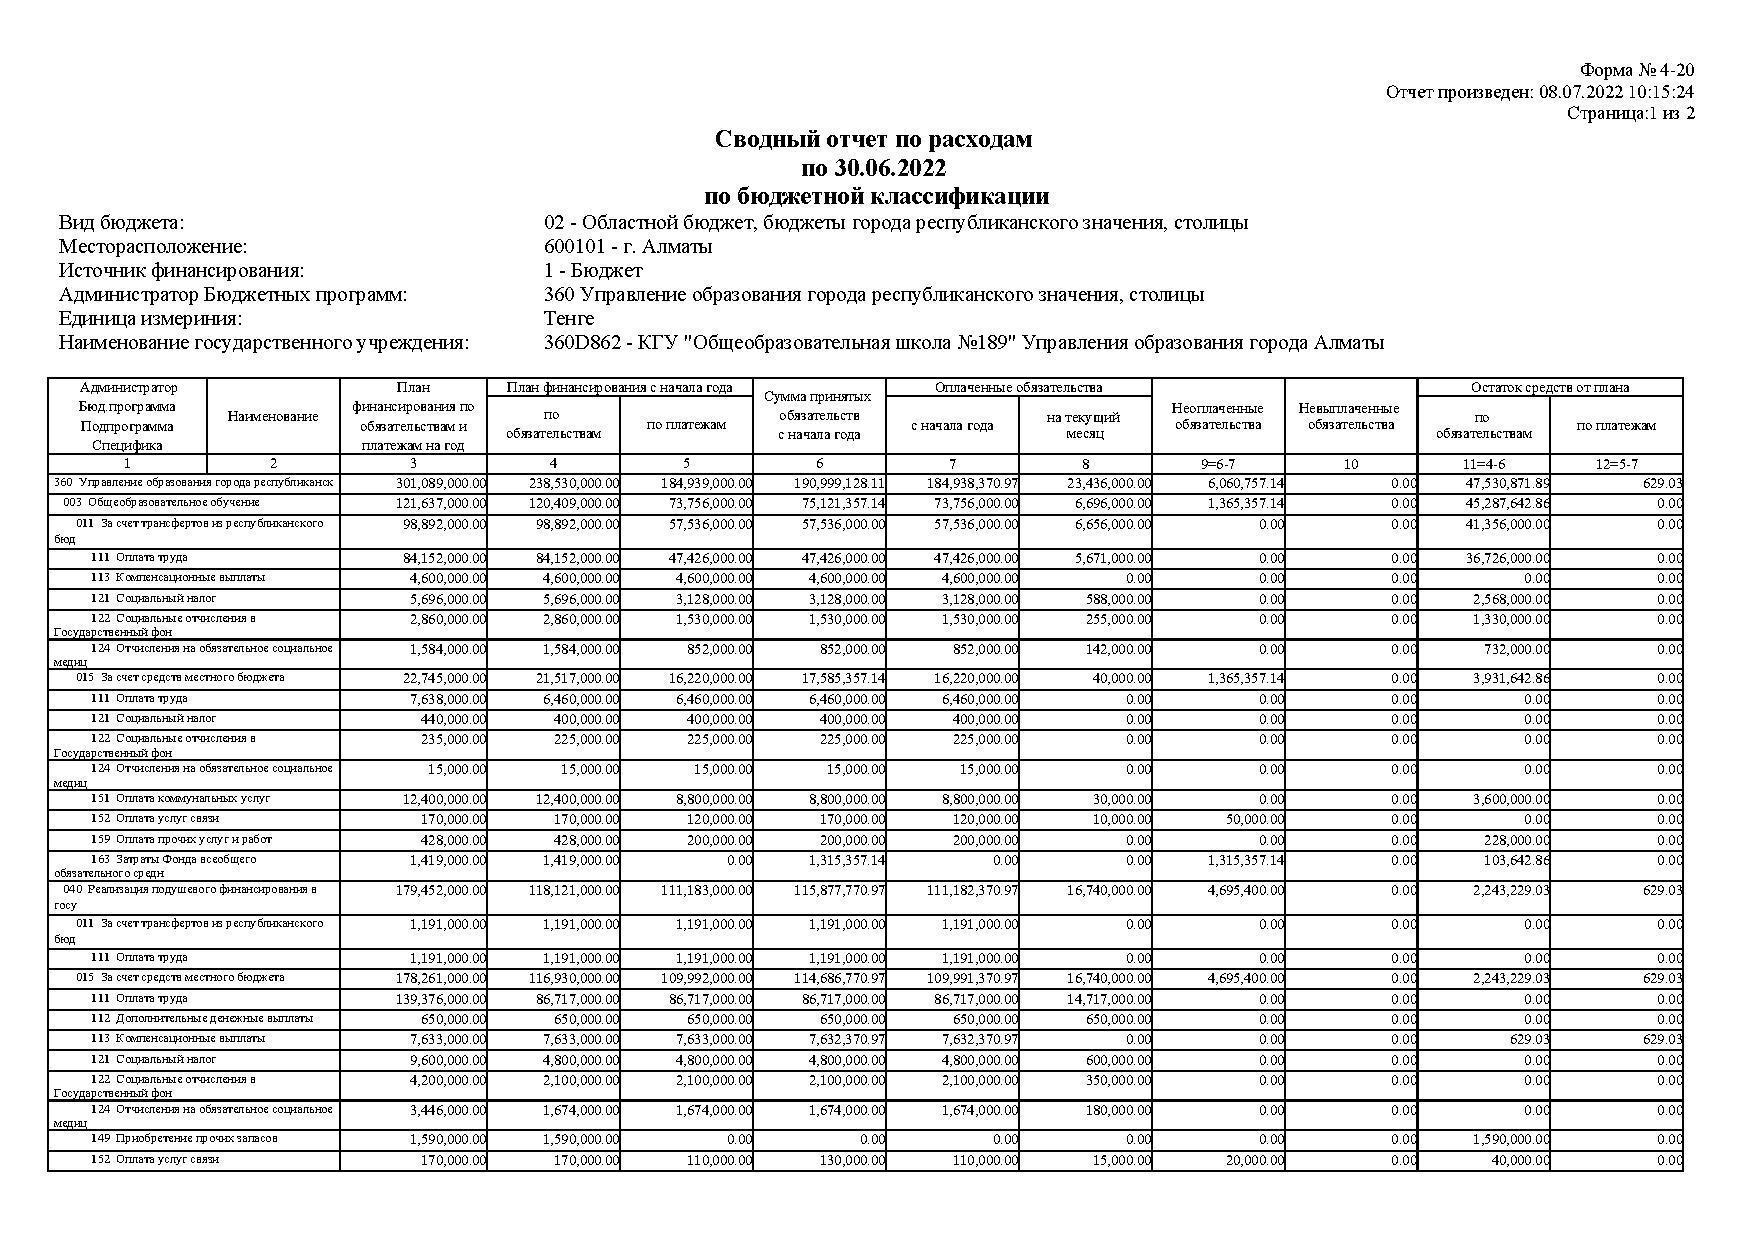 Сводный отчет по расходам по 30.06.2022